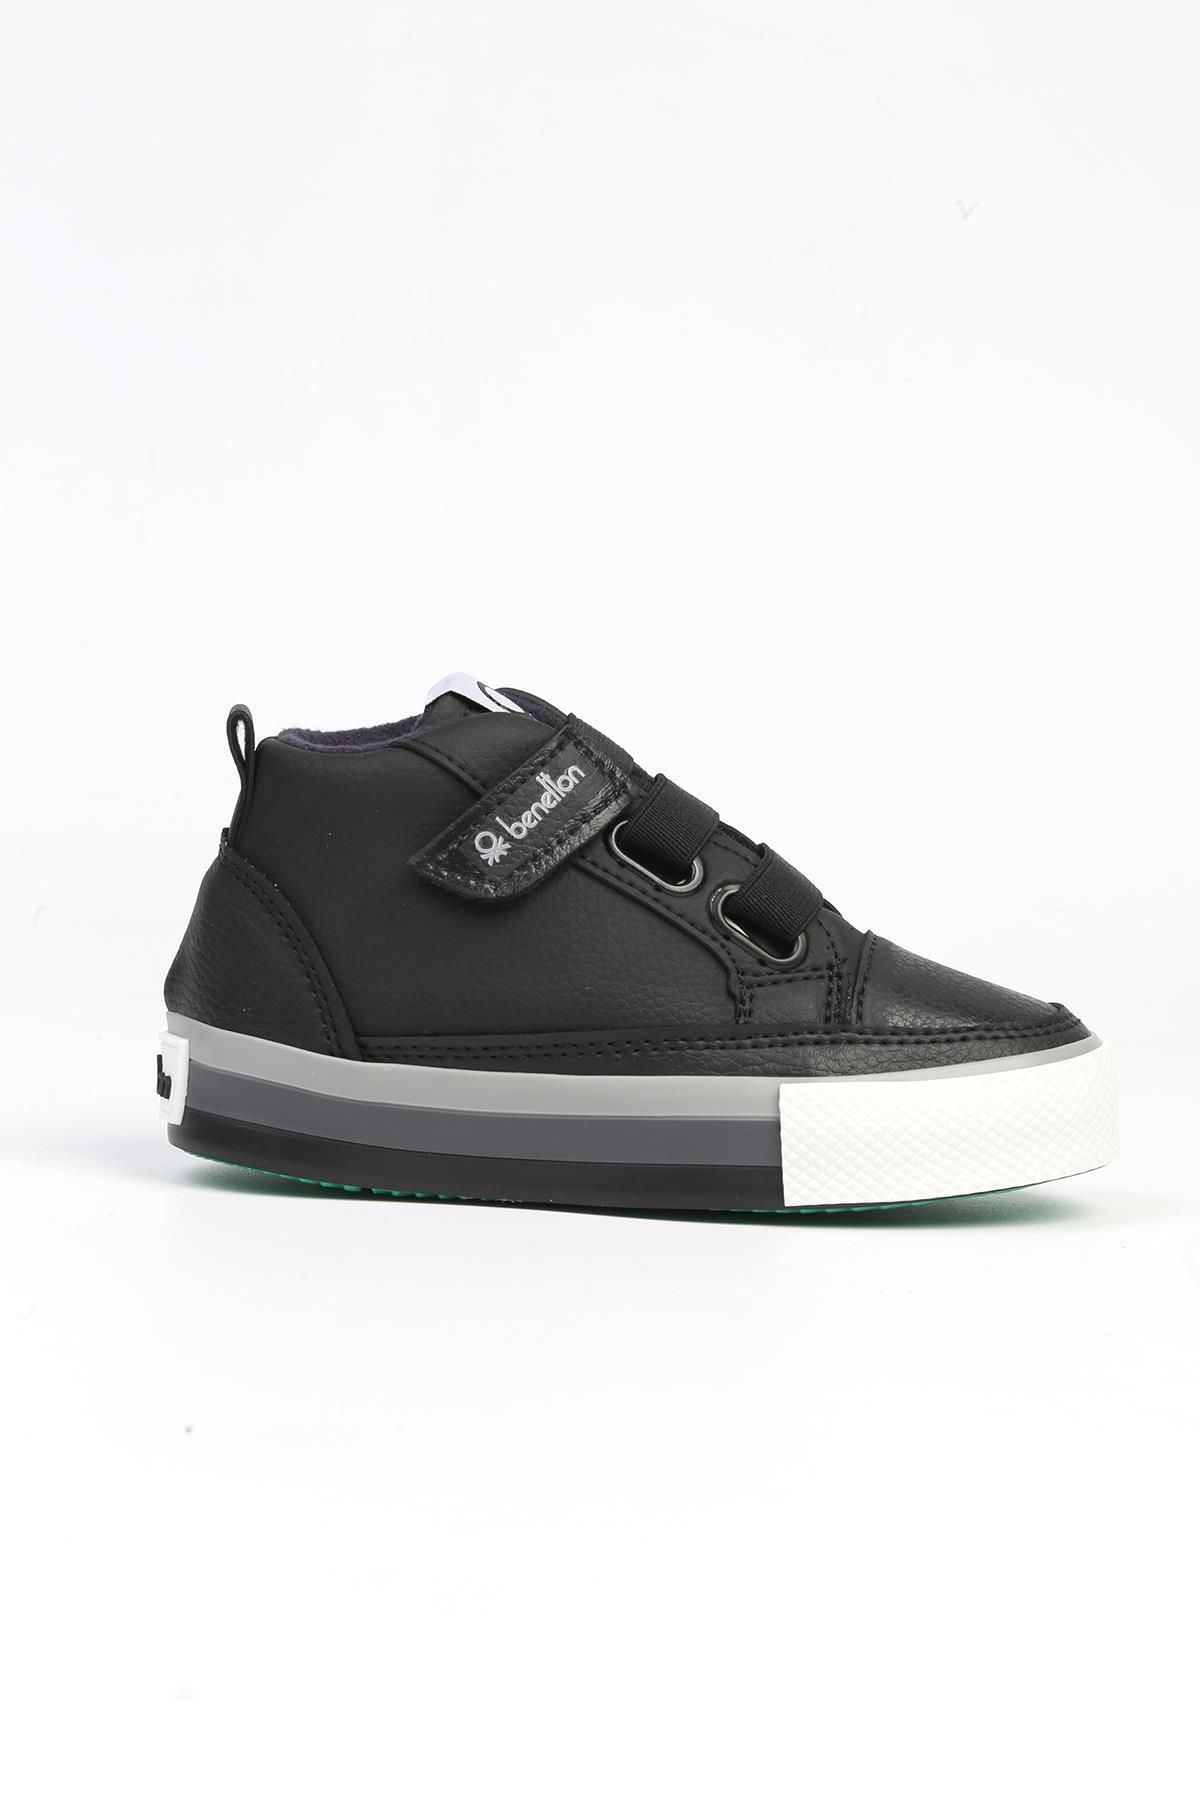 Benetton ® | BN-31143 - 3394 Siyah - Çocuk Spor Ayakkabı